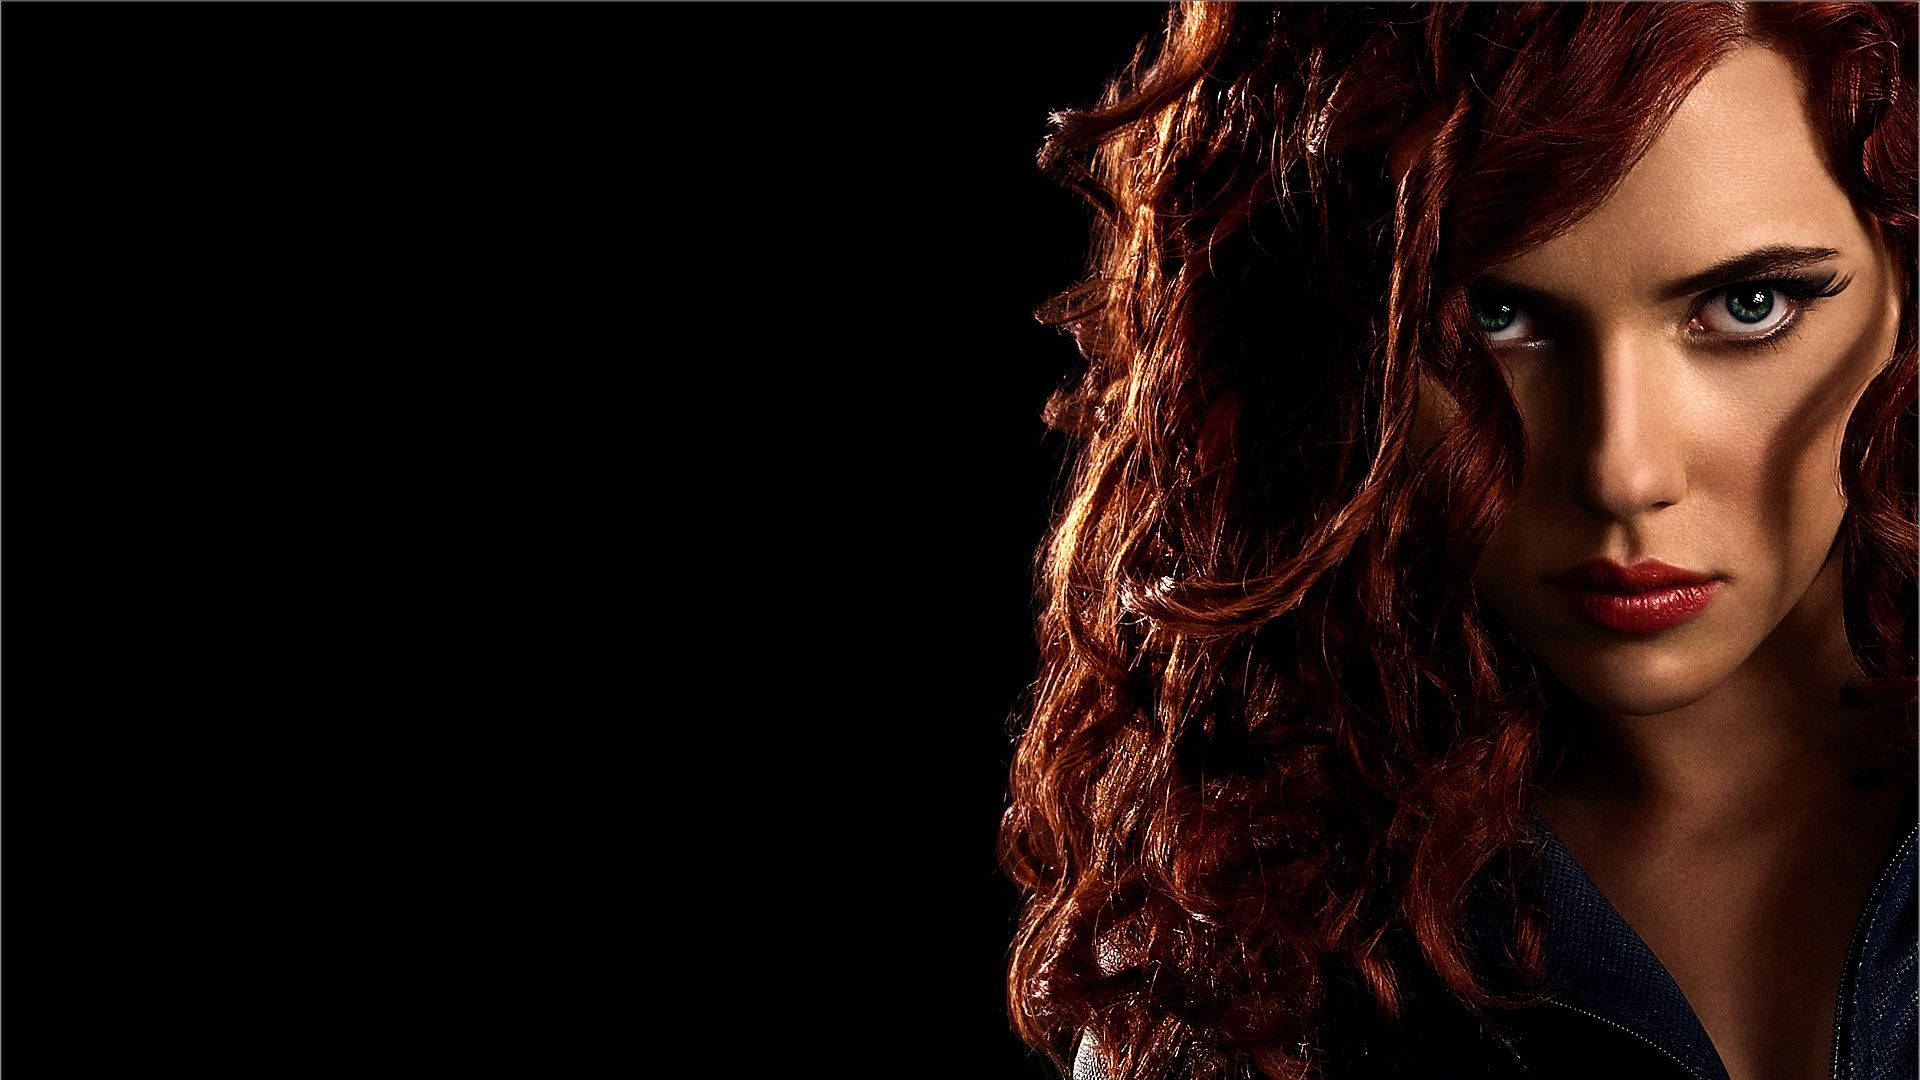 Scarlett Johansson as Black Widow in Iron Man 2 Wallpaper